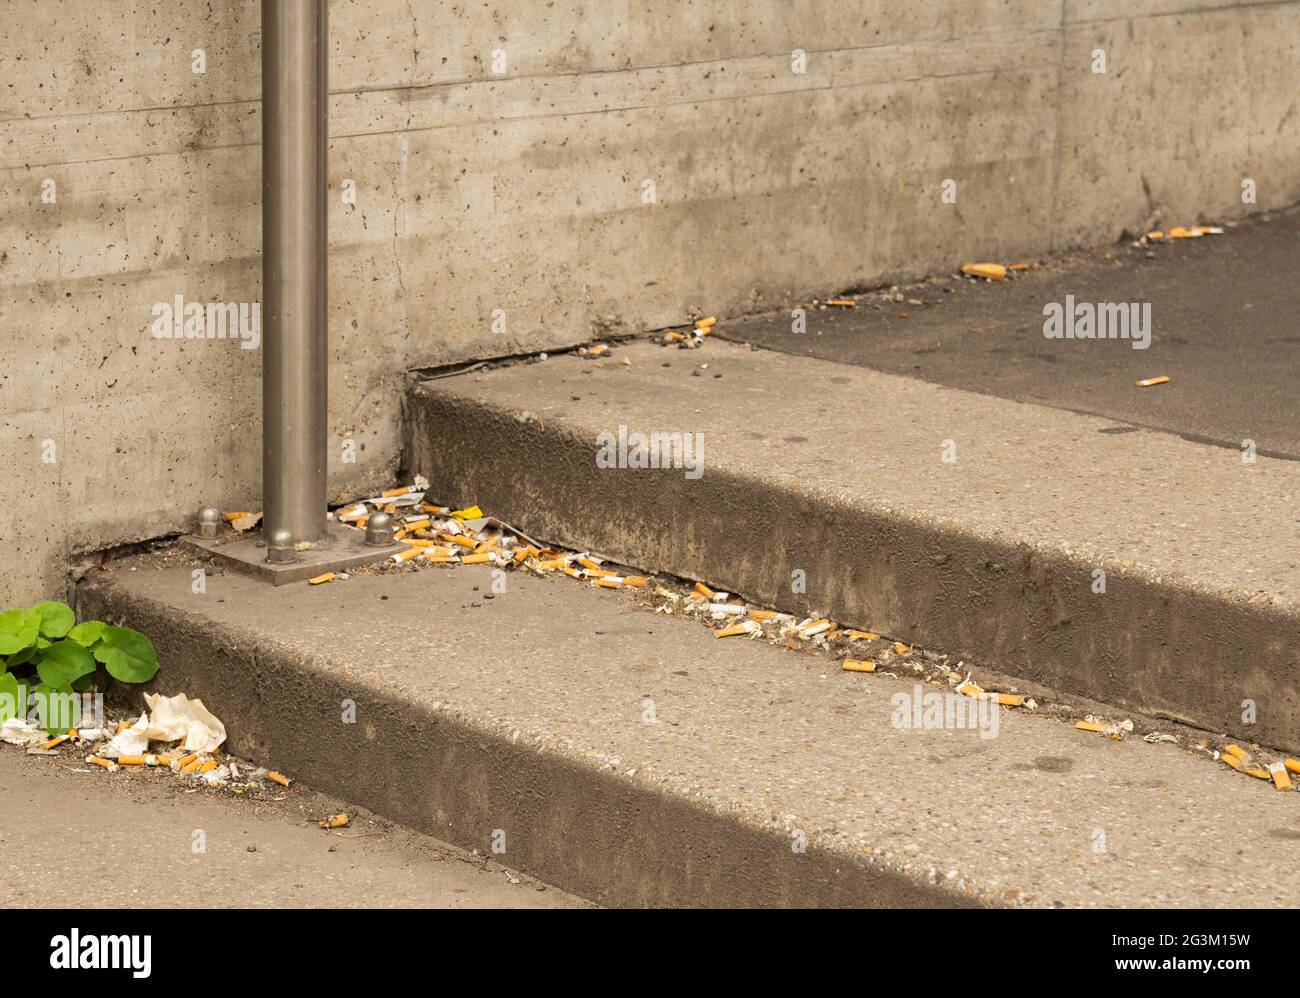 Weggeworfene Zigaretten auf einer Stiege Stock Photo